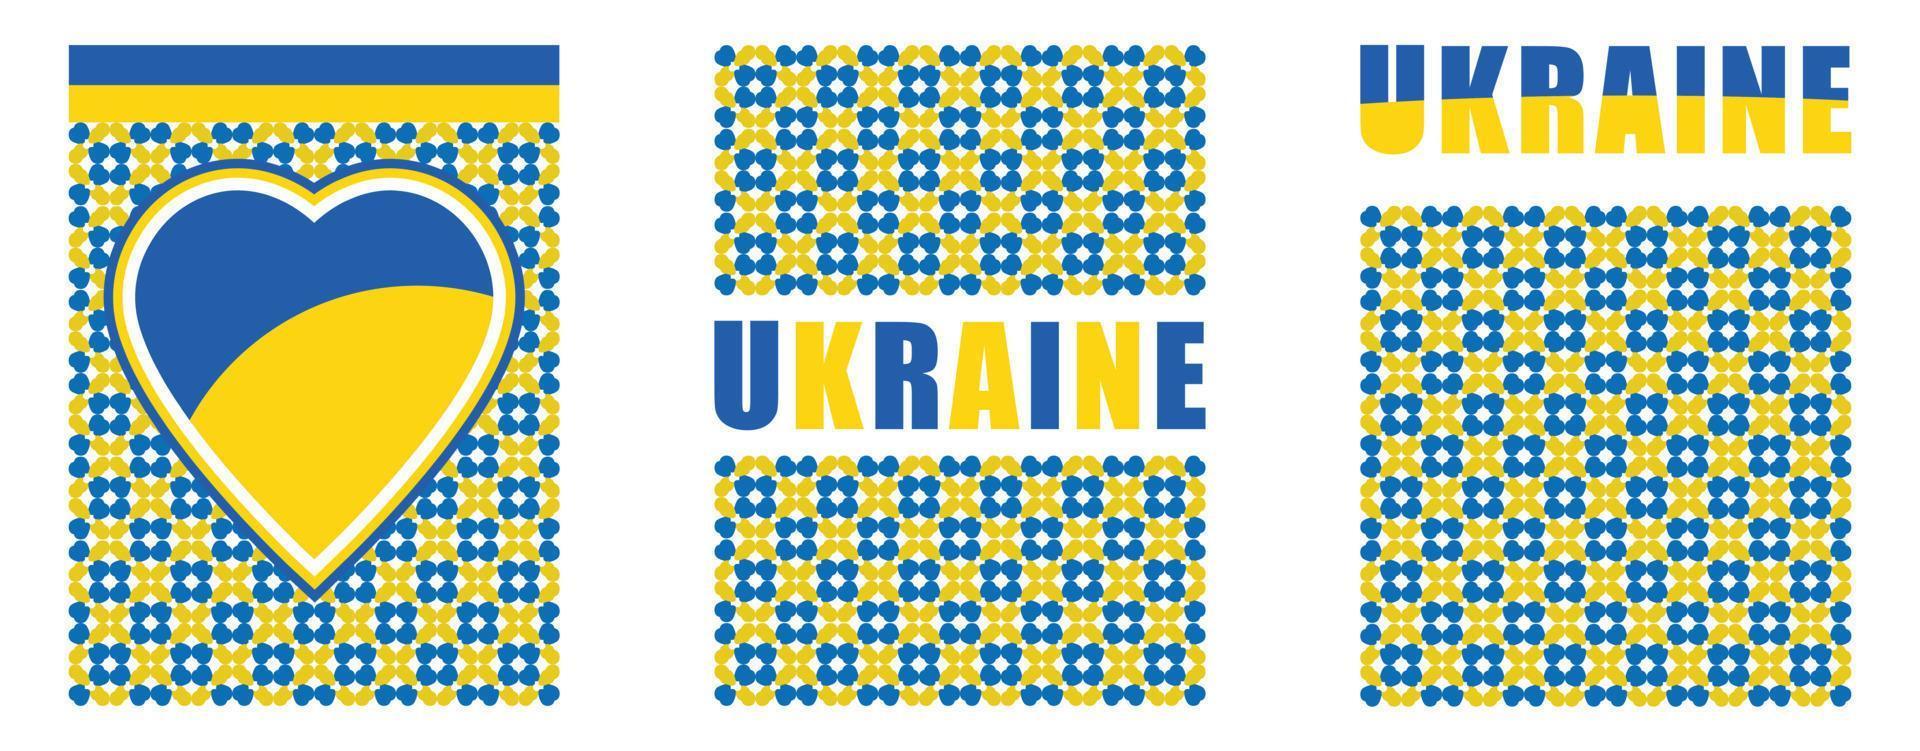 patrón de ucrania para el día nacional con un diseño moderno. bandera ucraniana y mapa con tipografía y tema de color amarillo azul. conflicto con rusia, puños levantados por solidaridad y fondo de bordado vector